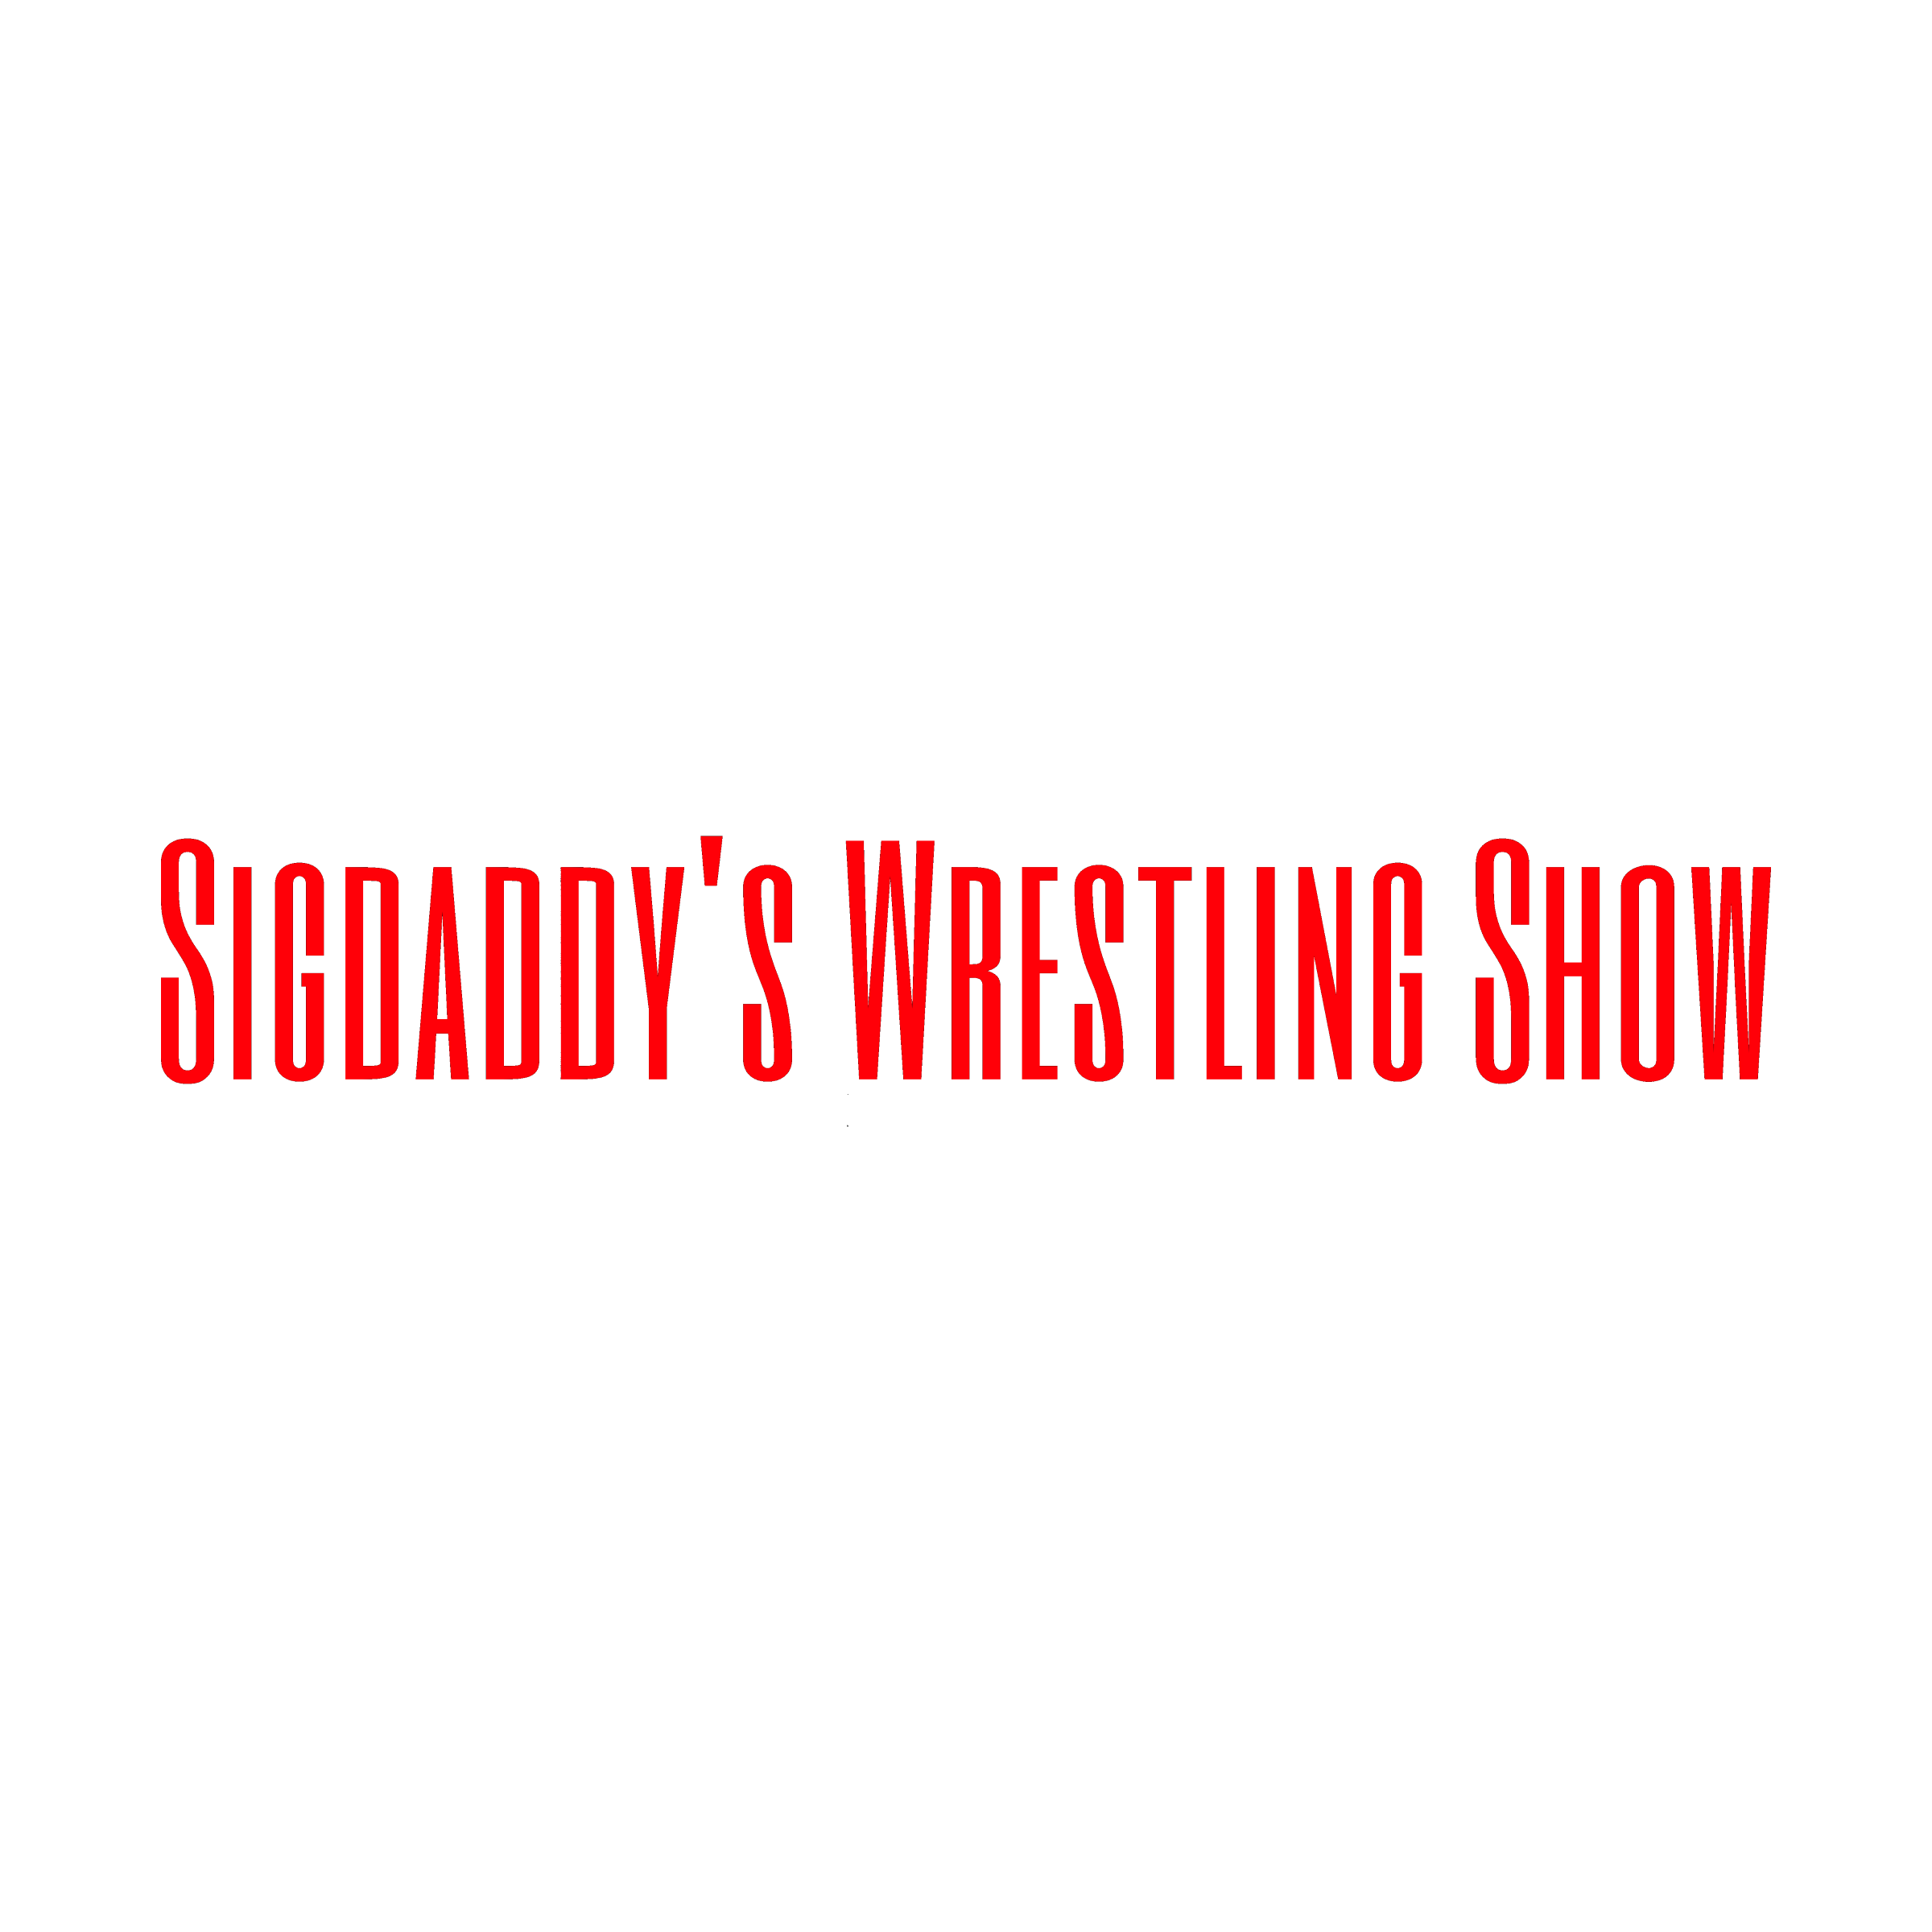 Sigdaddys Wrestling Show